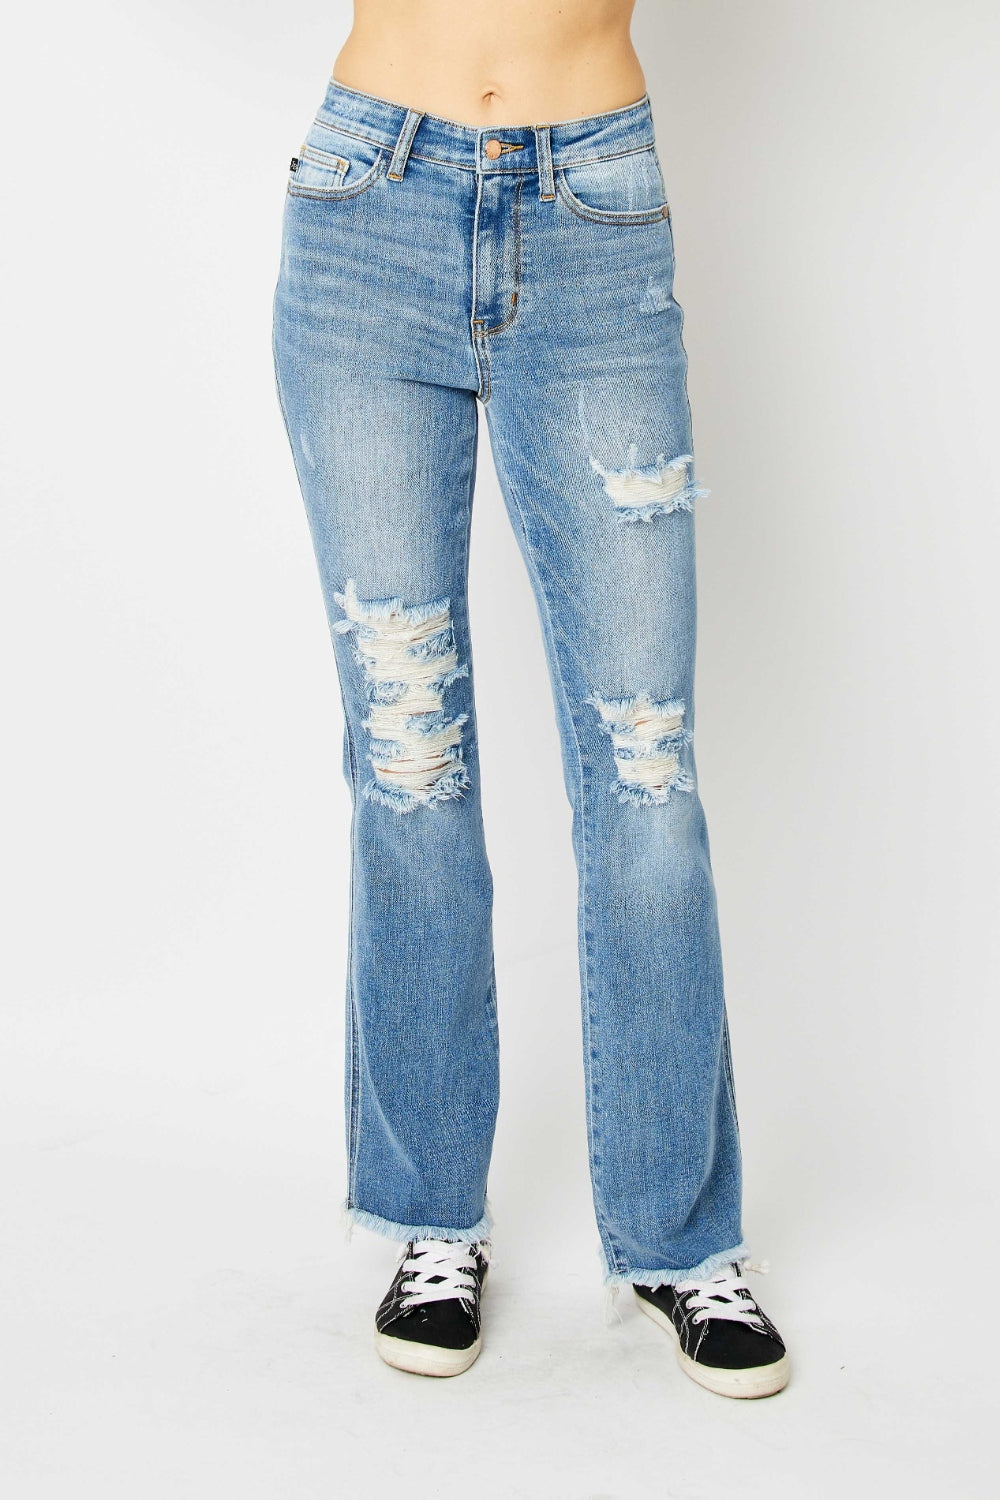 Judy Blue, High Waist Frayed Hem Bootcut Jeans Style 82542